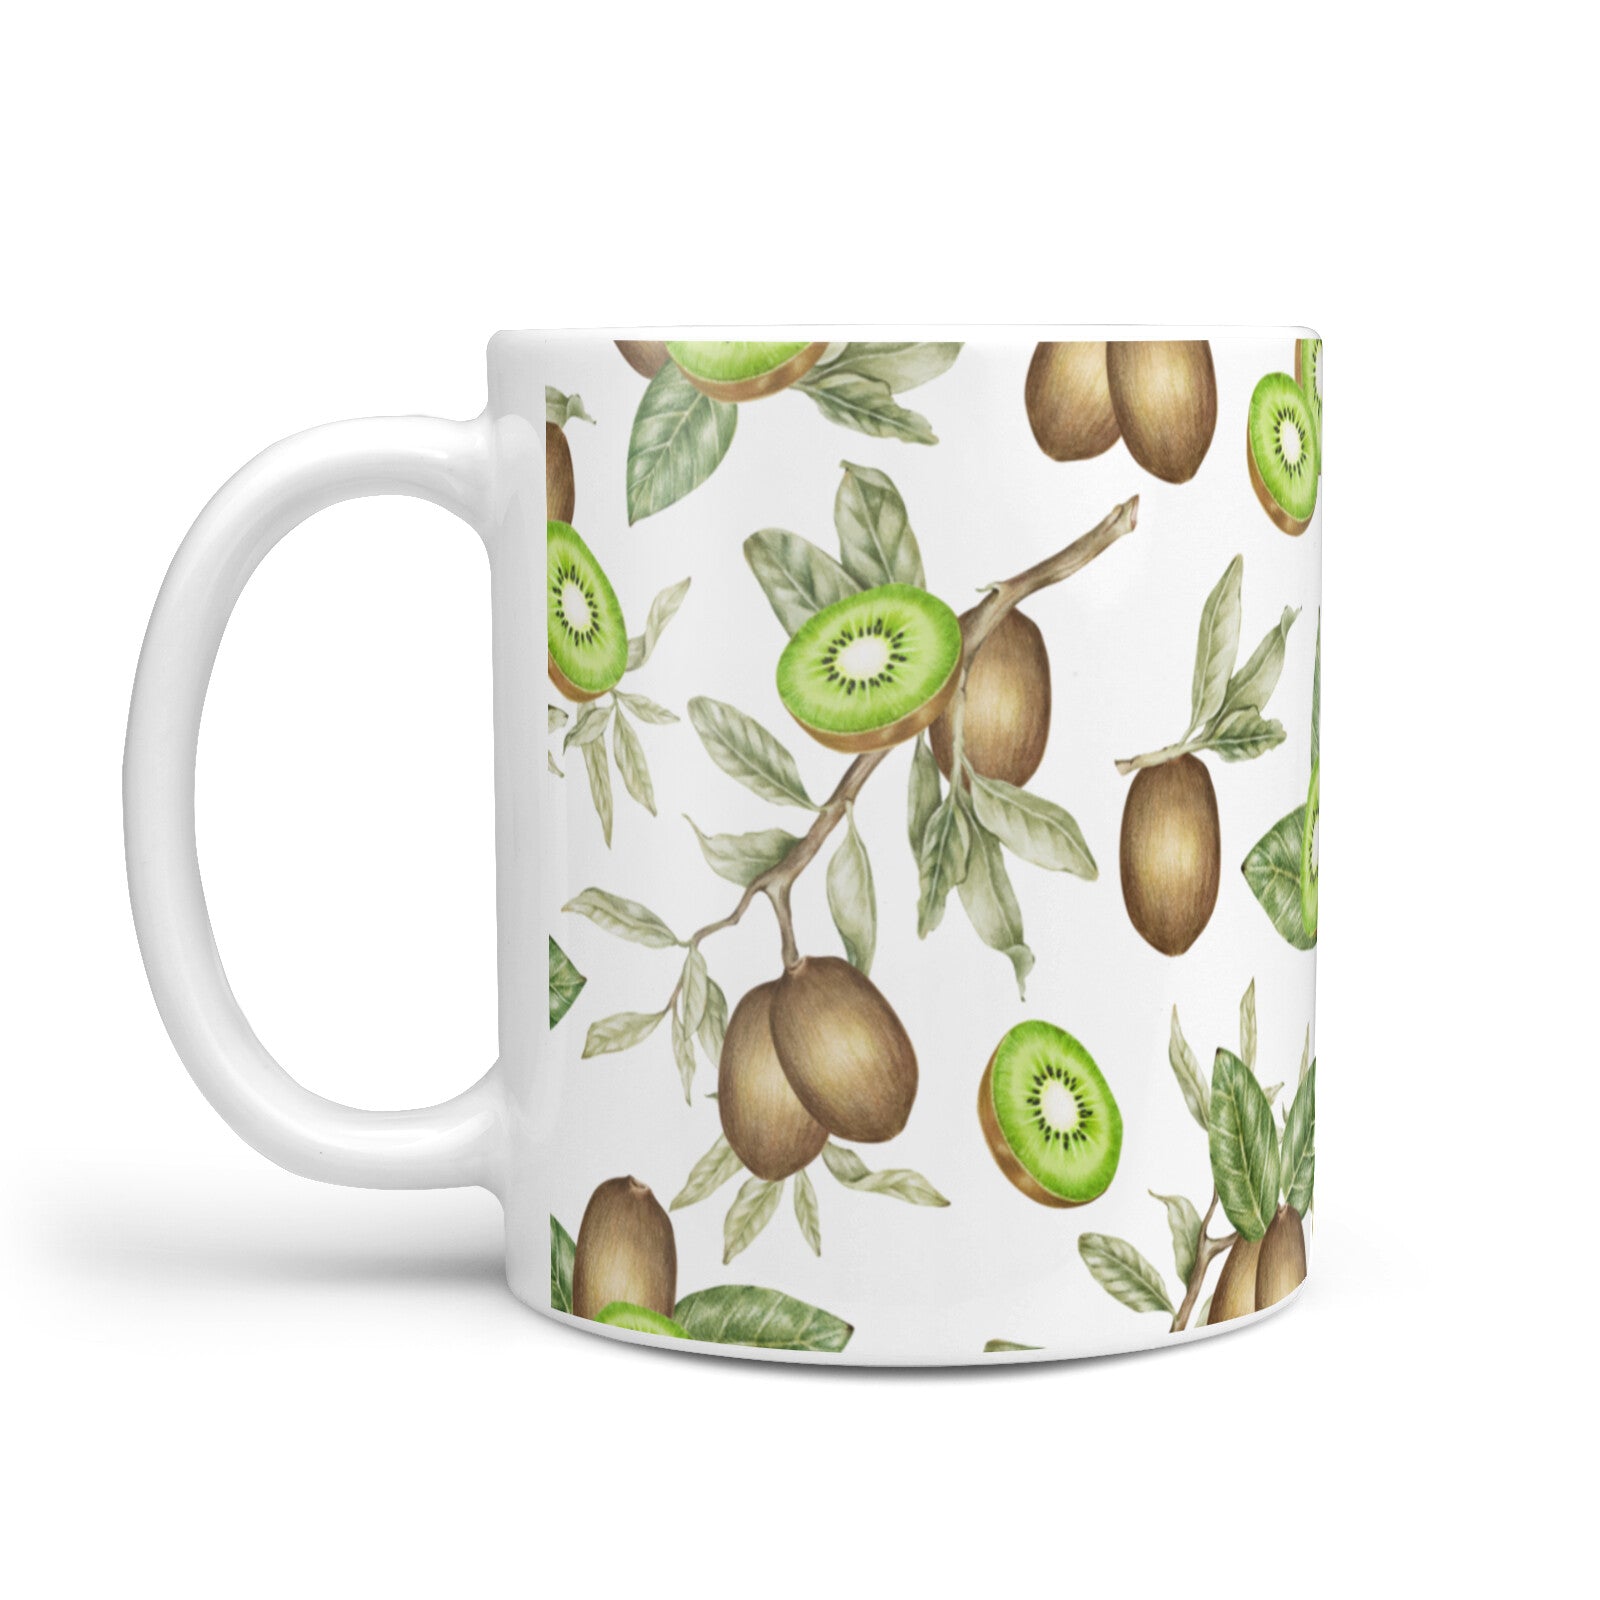 Kiwi Fruit 10oz Mug Alternative Image 1